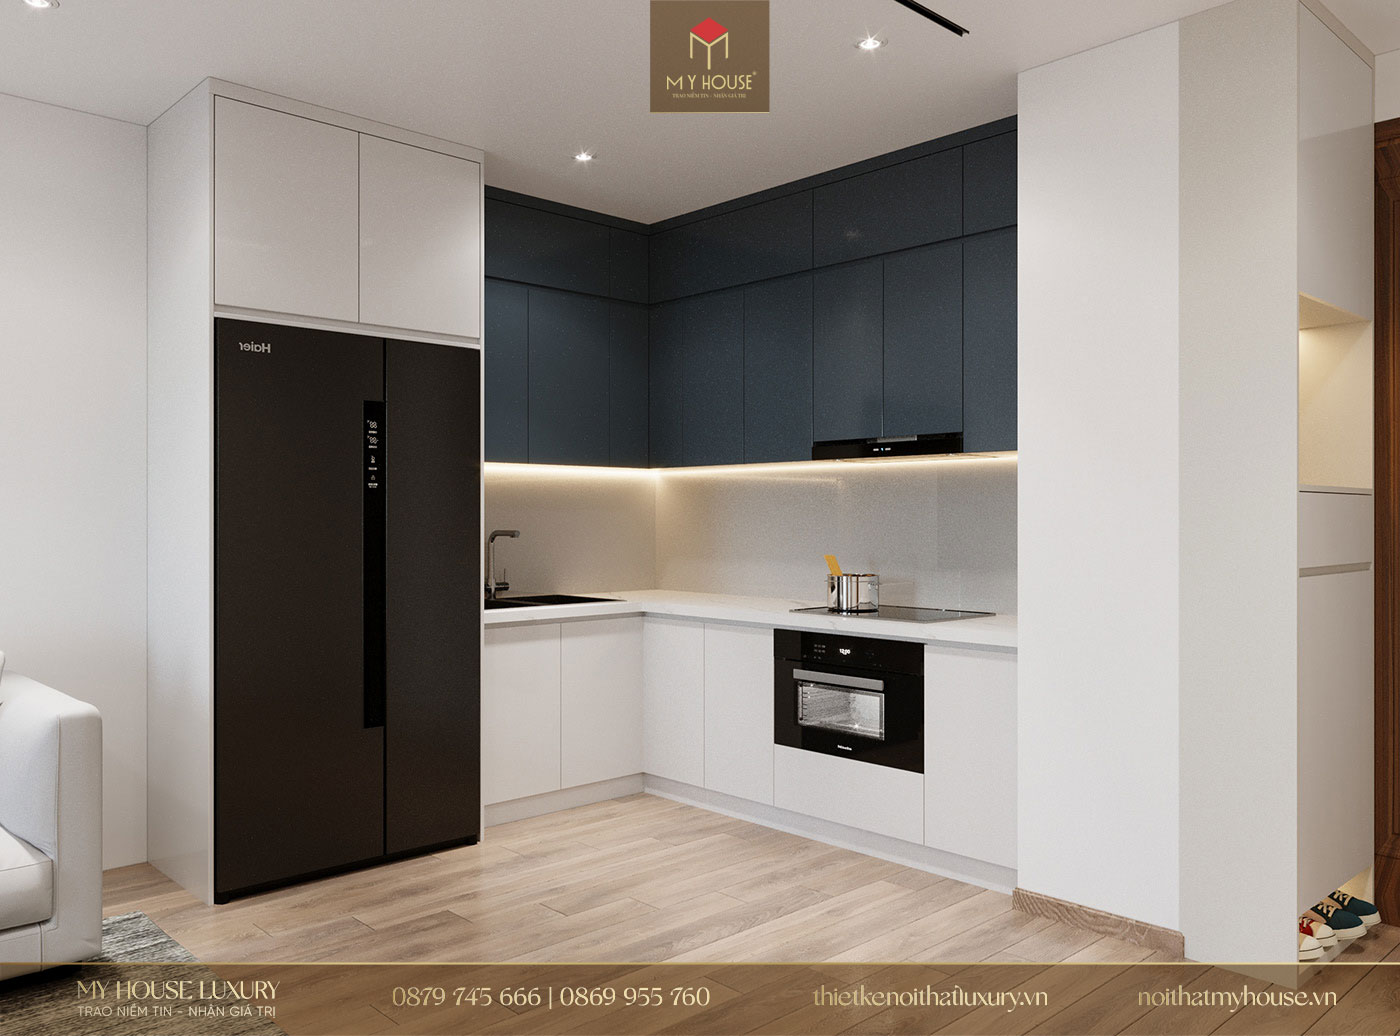 Phong cách tối giản giúp không gian phòng bếp trở nên gọn gàng hơn